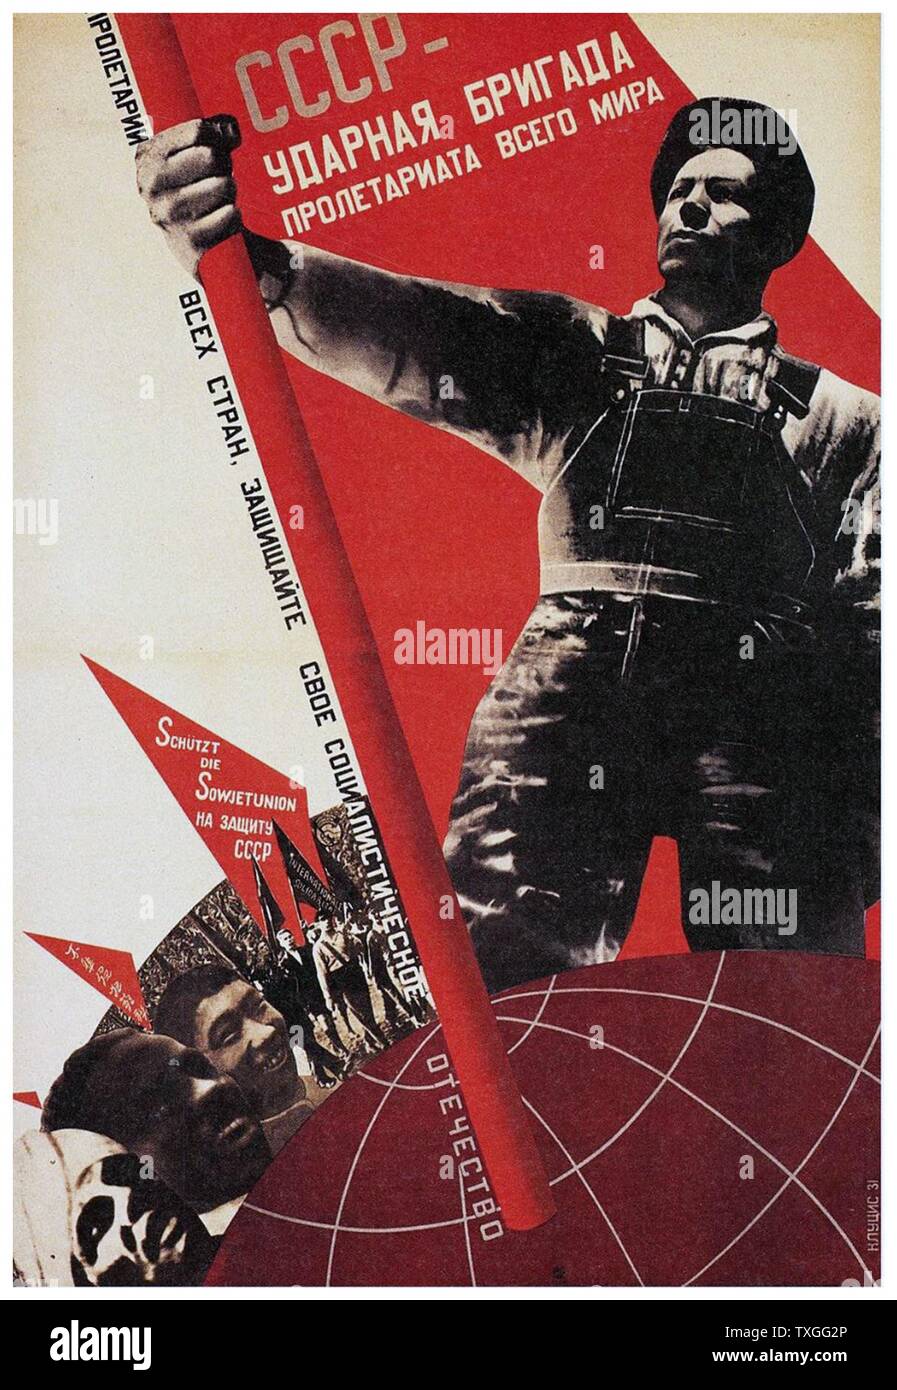 Affiches de propagande de l'Union soviétique. Le texte "URSS Brigade de choc - prolétariat de tous les monde ! Travailleurs du monde, protéger la patrie socialiste". Banque D'Images